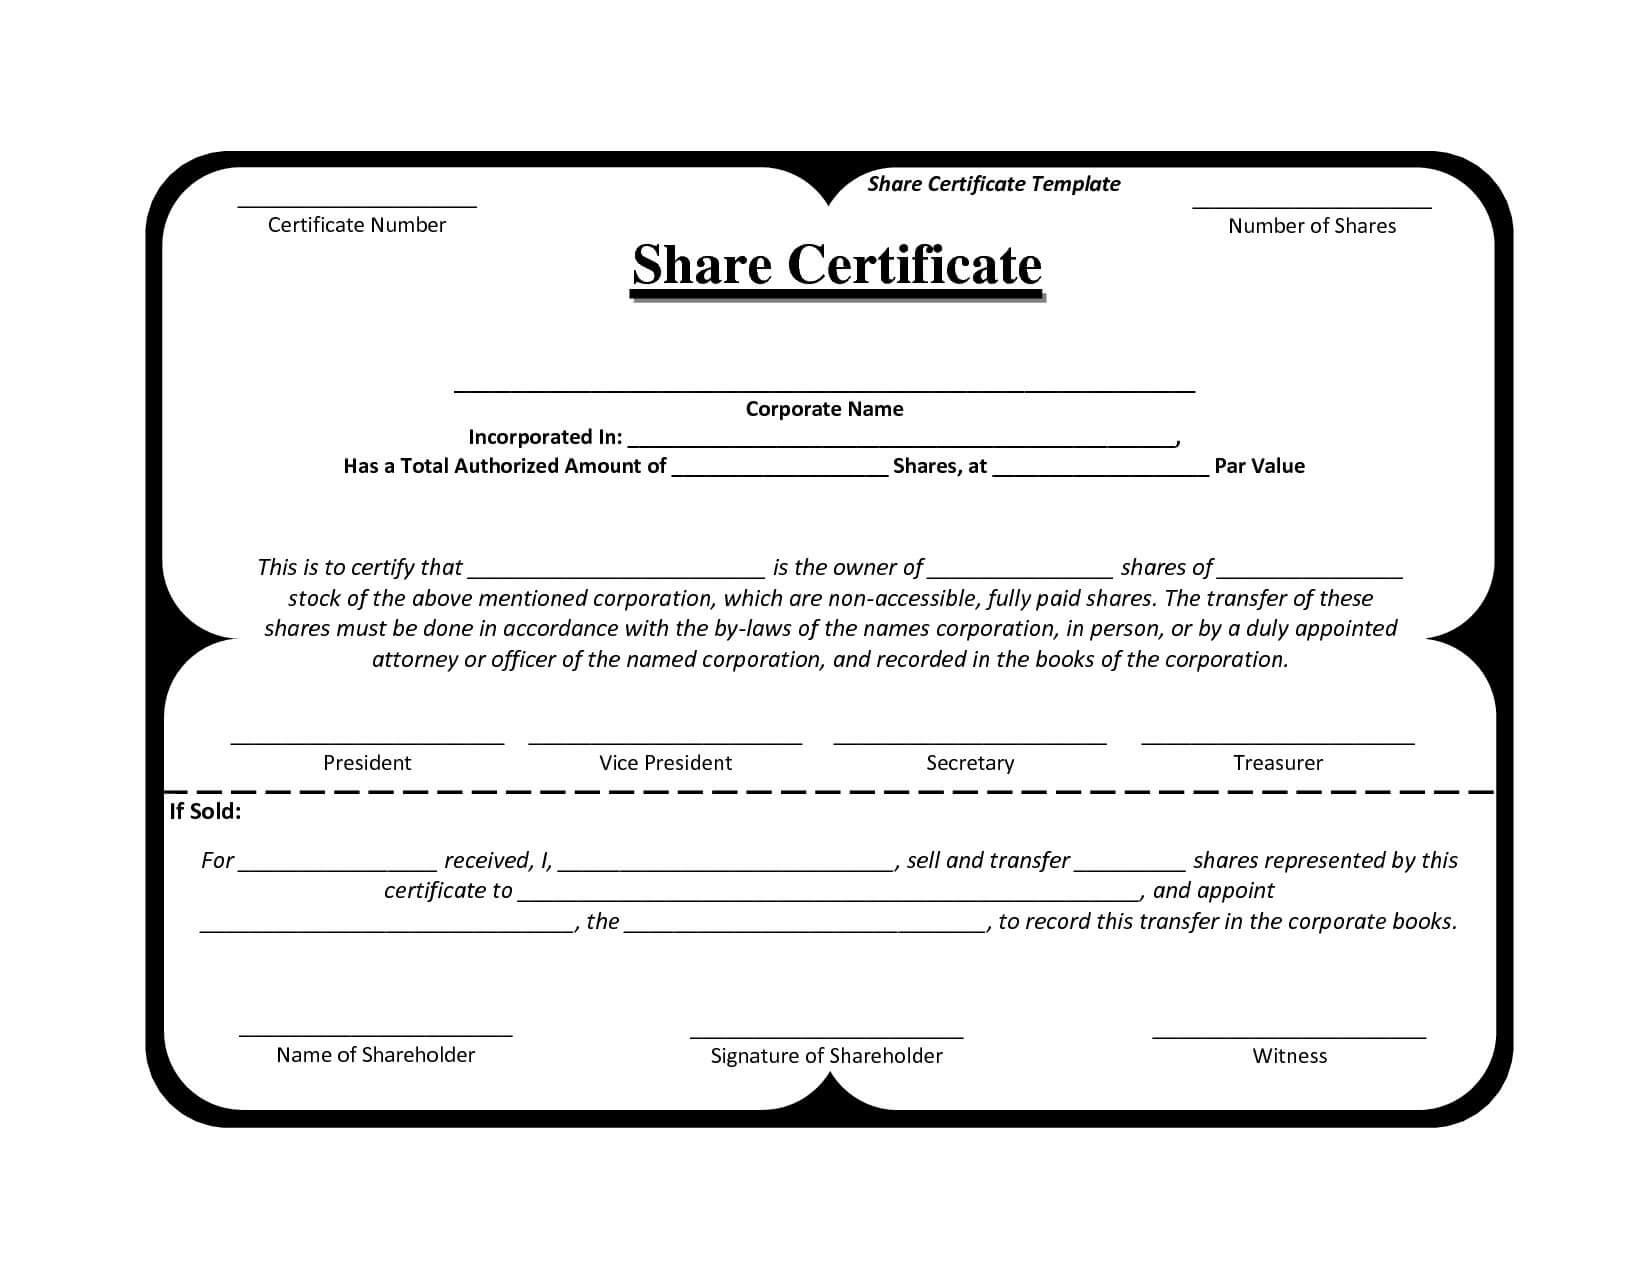 Share Certificate Template Alberta Urgent Request Letter In Corporate Share Certificate Template